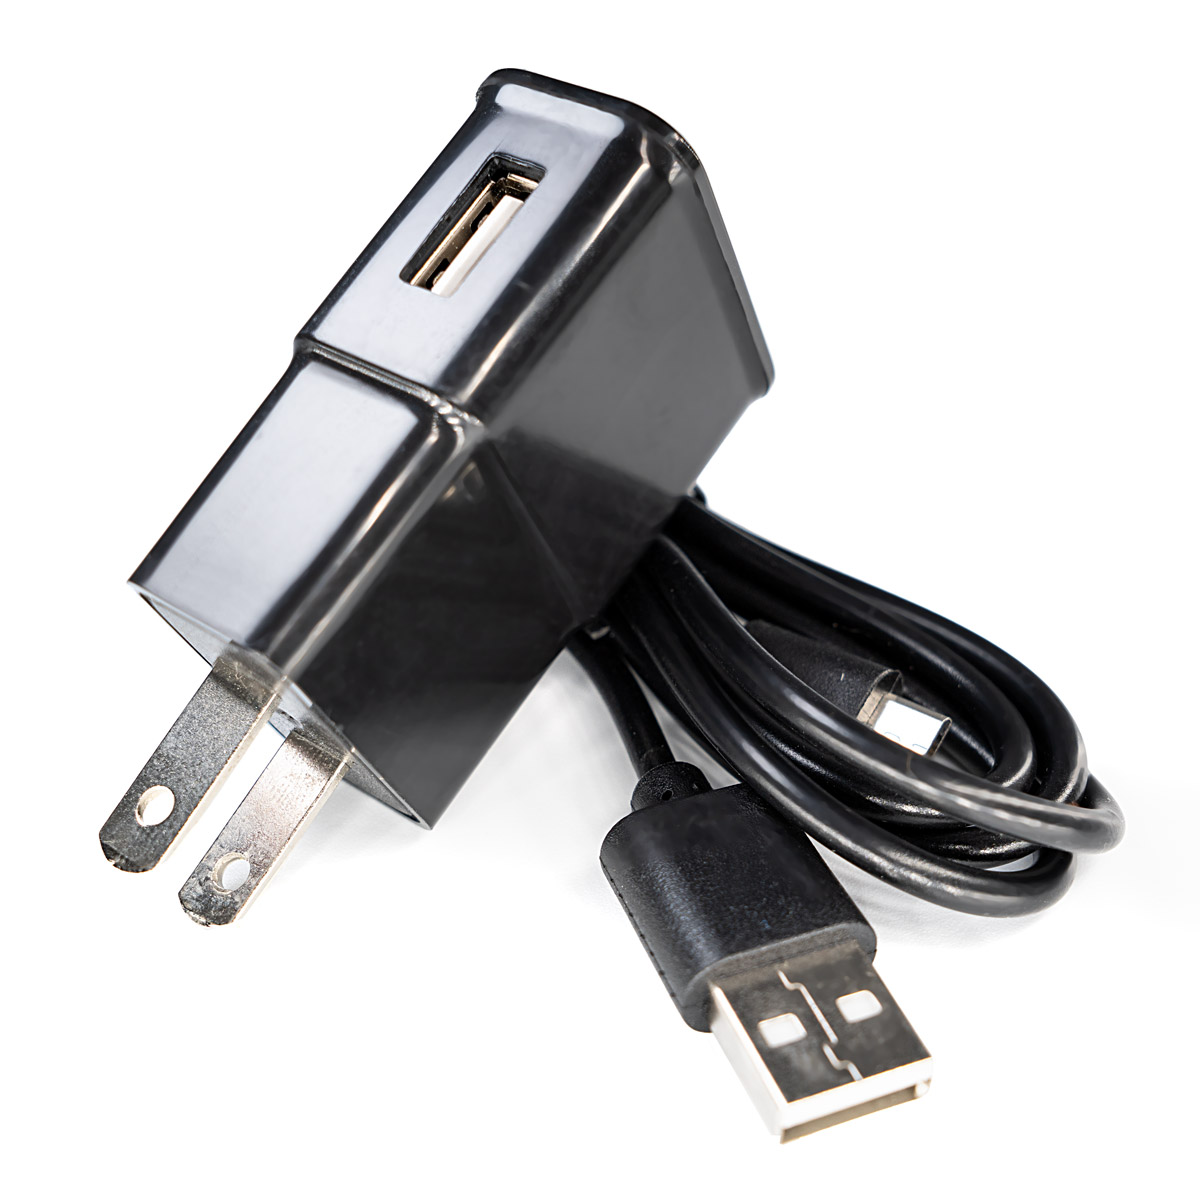 适用于 CHI Palm 的通用 USB 交流充电器，带 Micro-USB 电缆